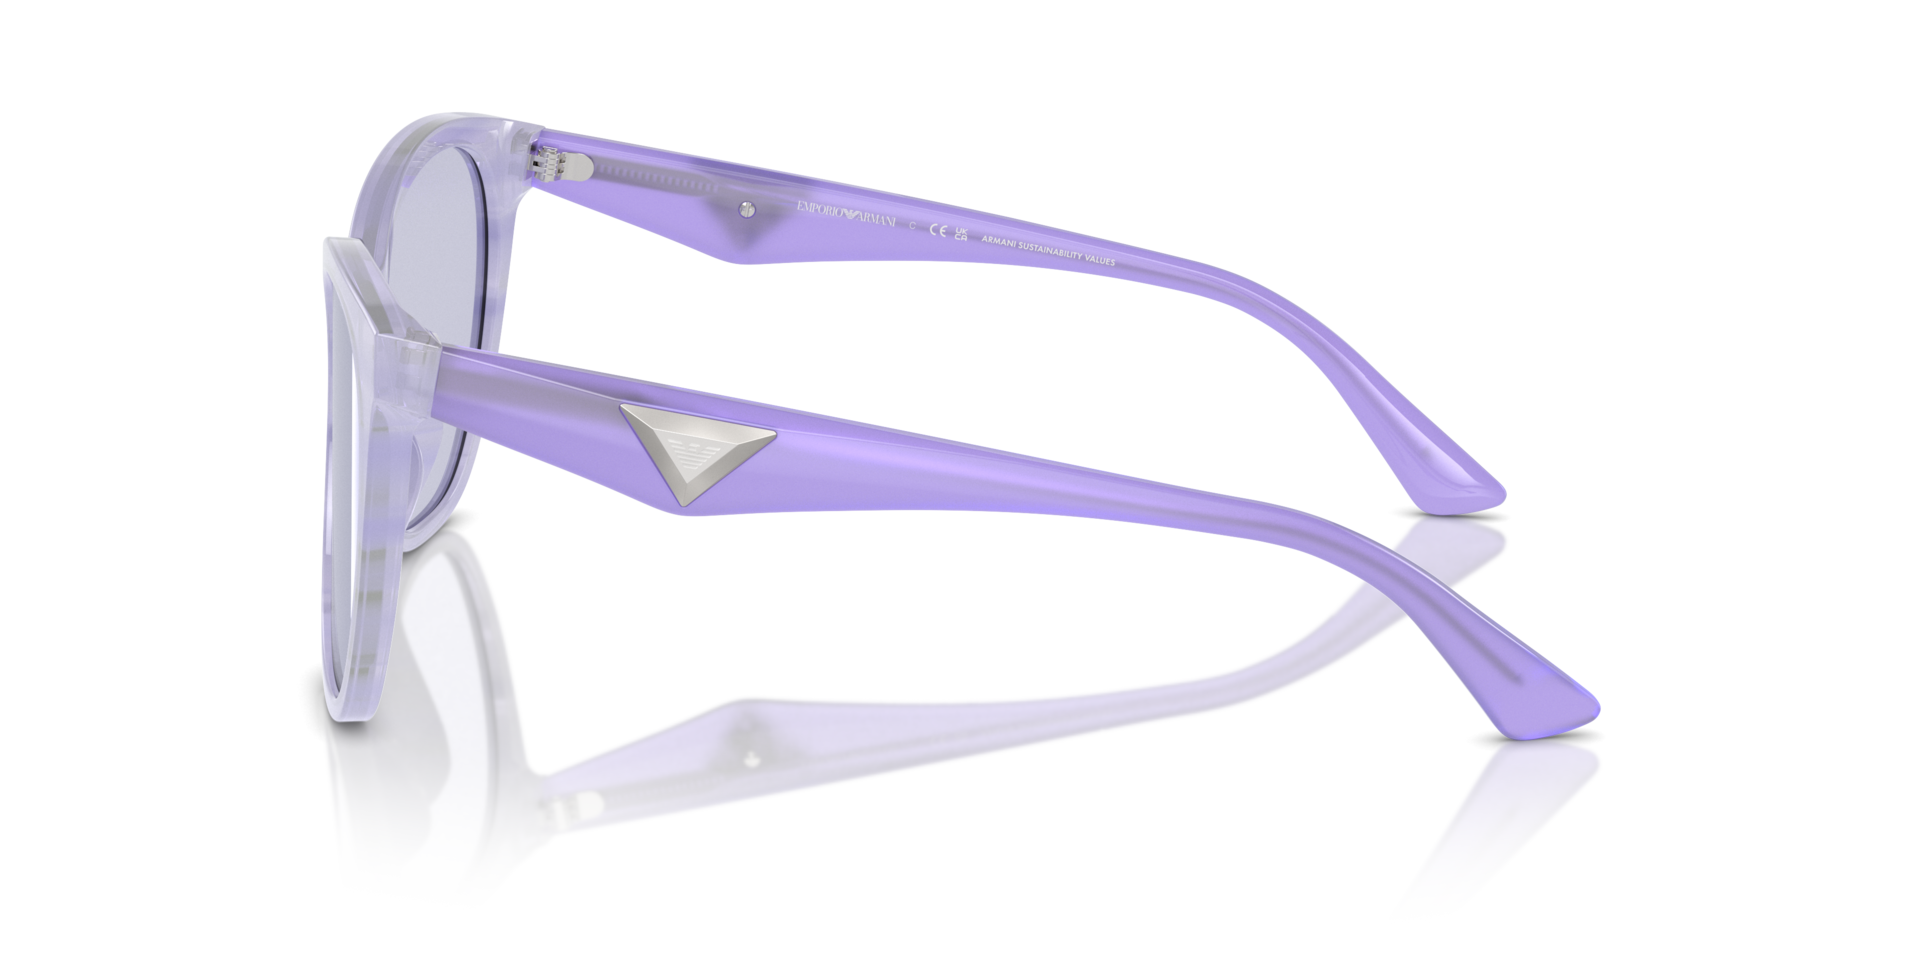 Das Bild zeigt die Sonnenbrille EA4222 61131A von der Marke Emporio Armani in flieder.